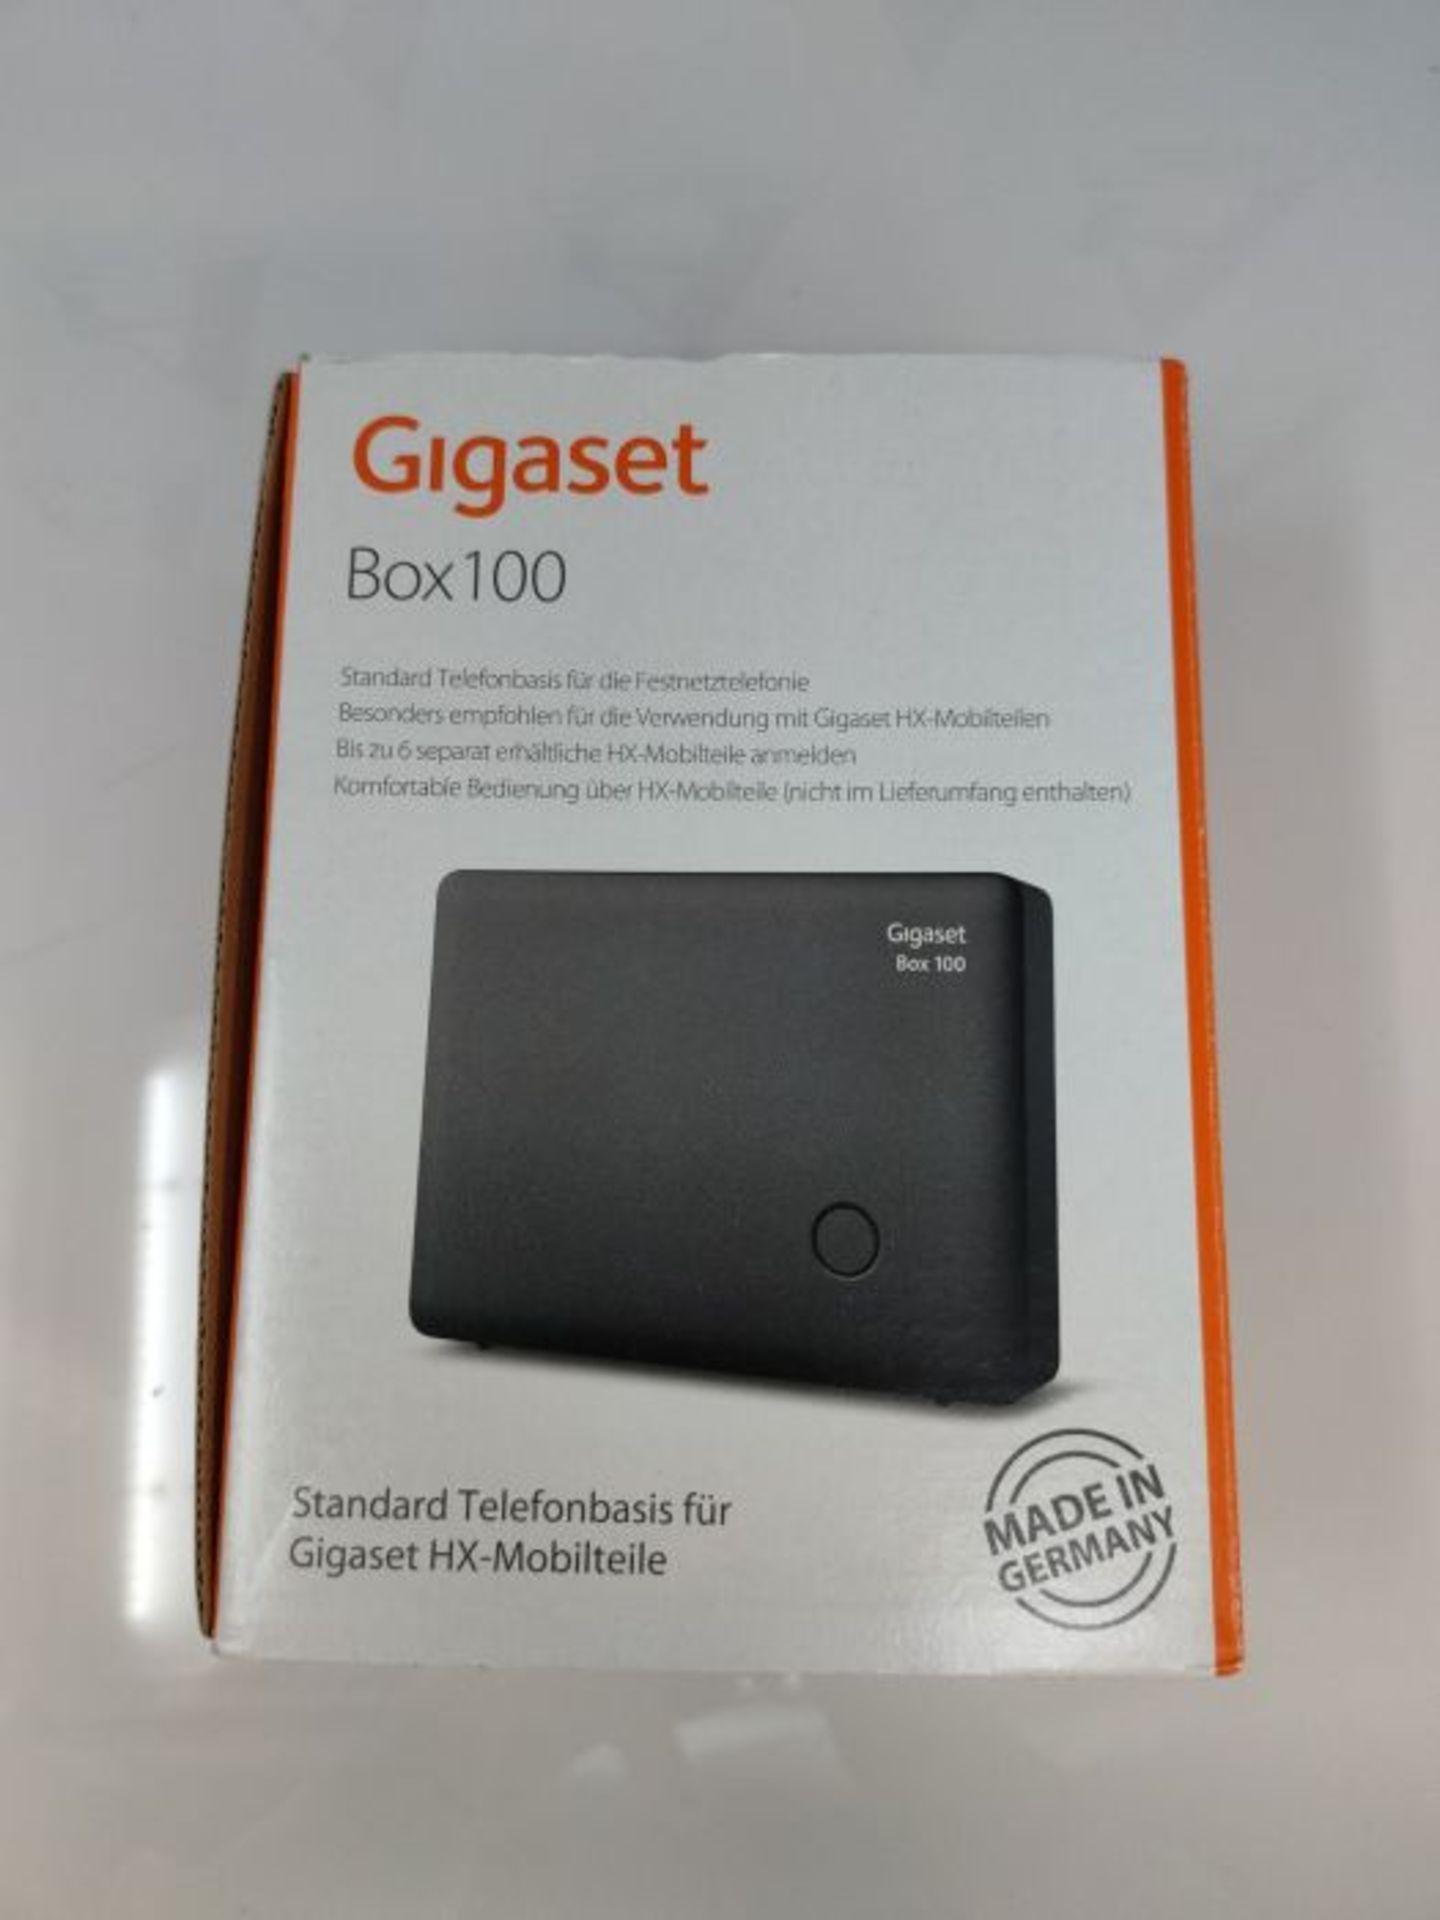 Gigaset DECT Basisstation Box 100 für Ihr eigenes Kommunikationssystem mit Gigaset Mo - Image 2 of 3